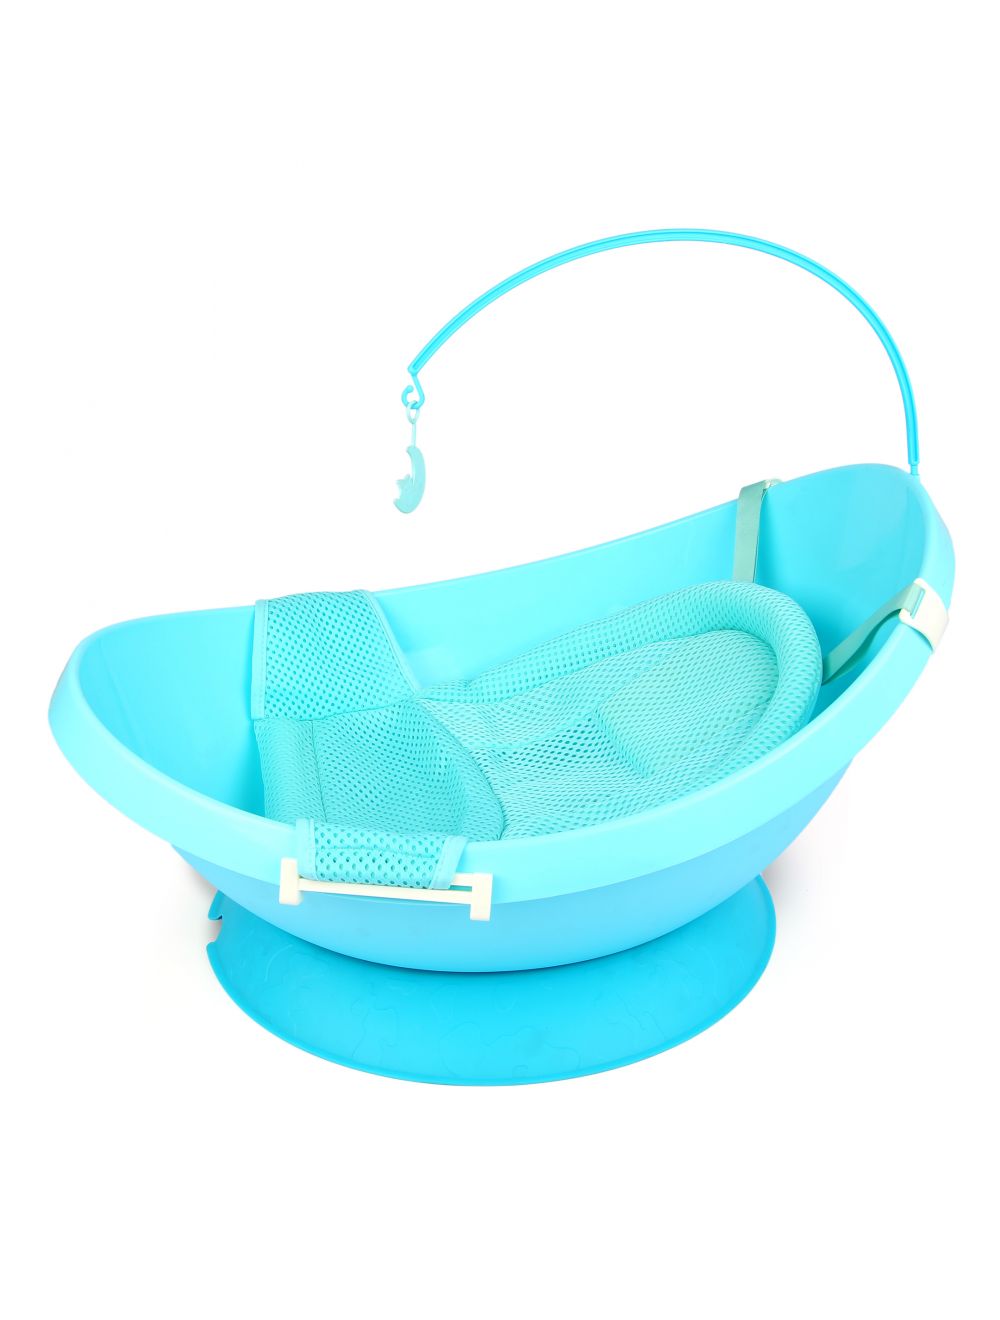 Joymaker Baby Bath Tub With Bath Pad Blue